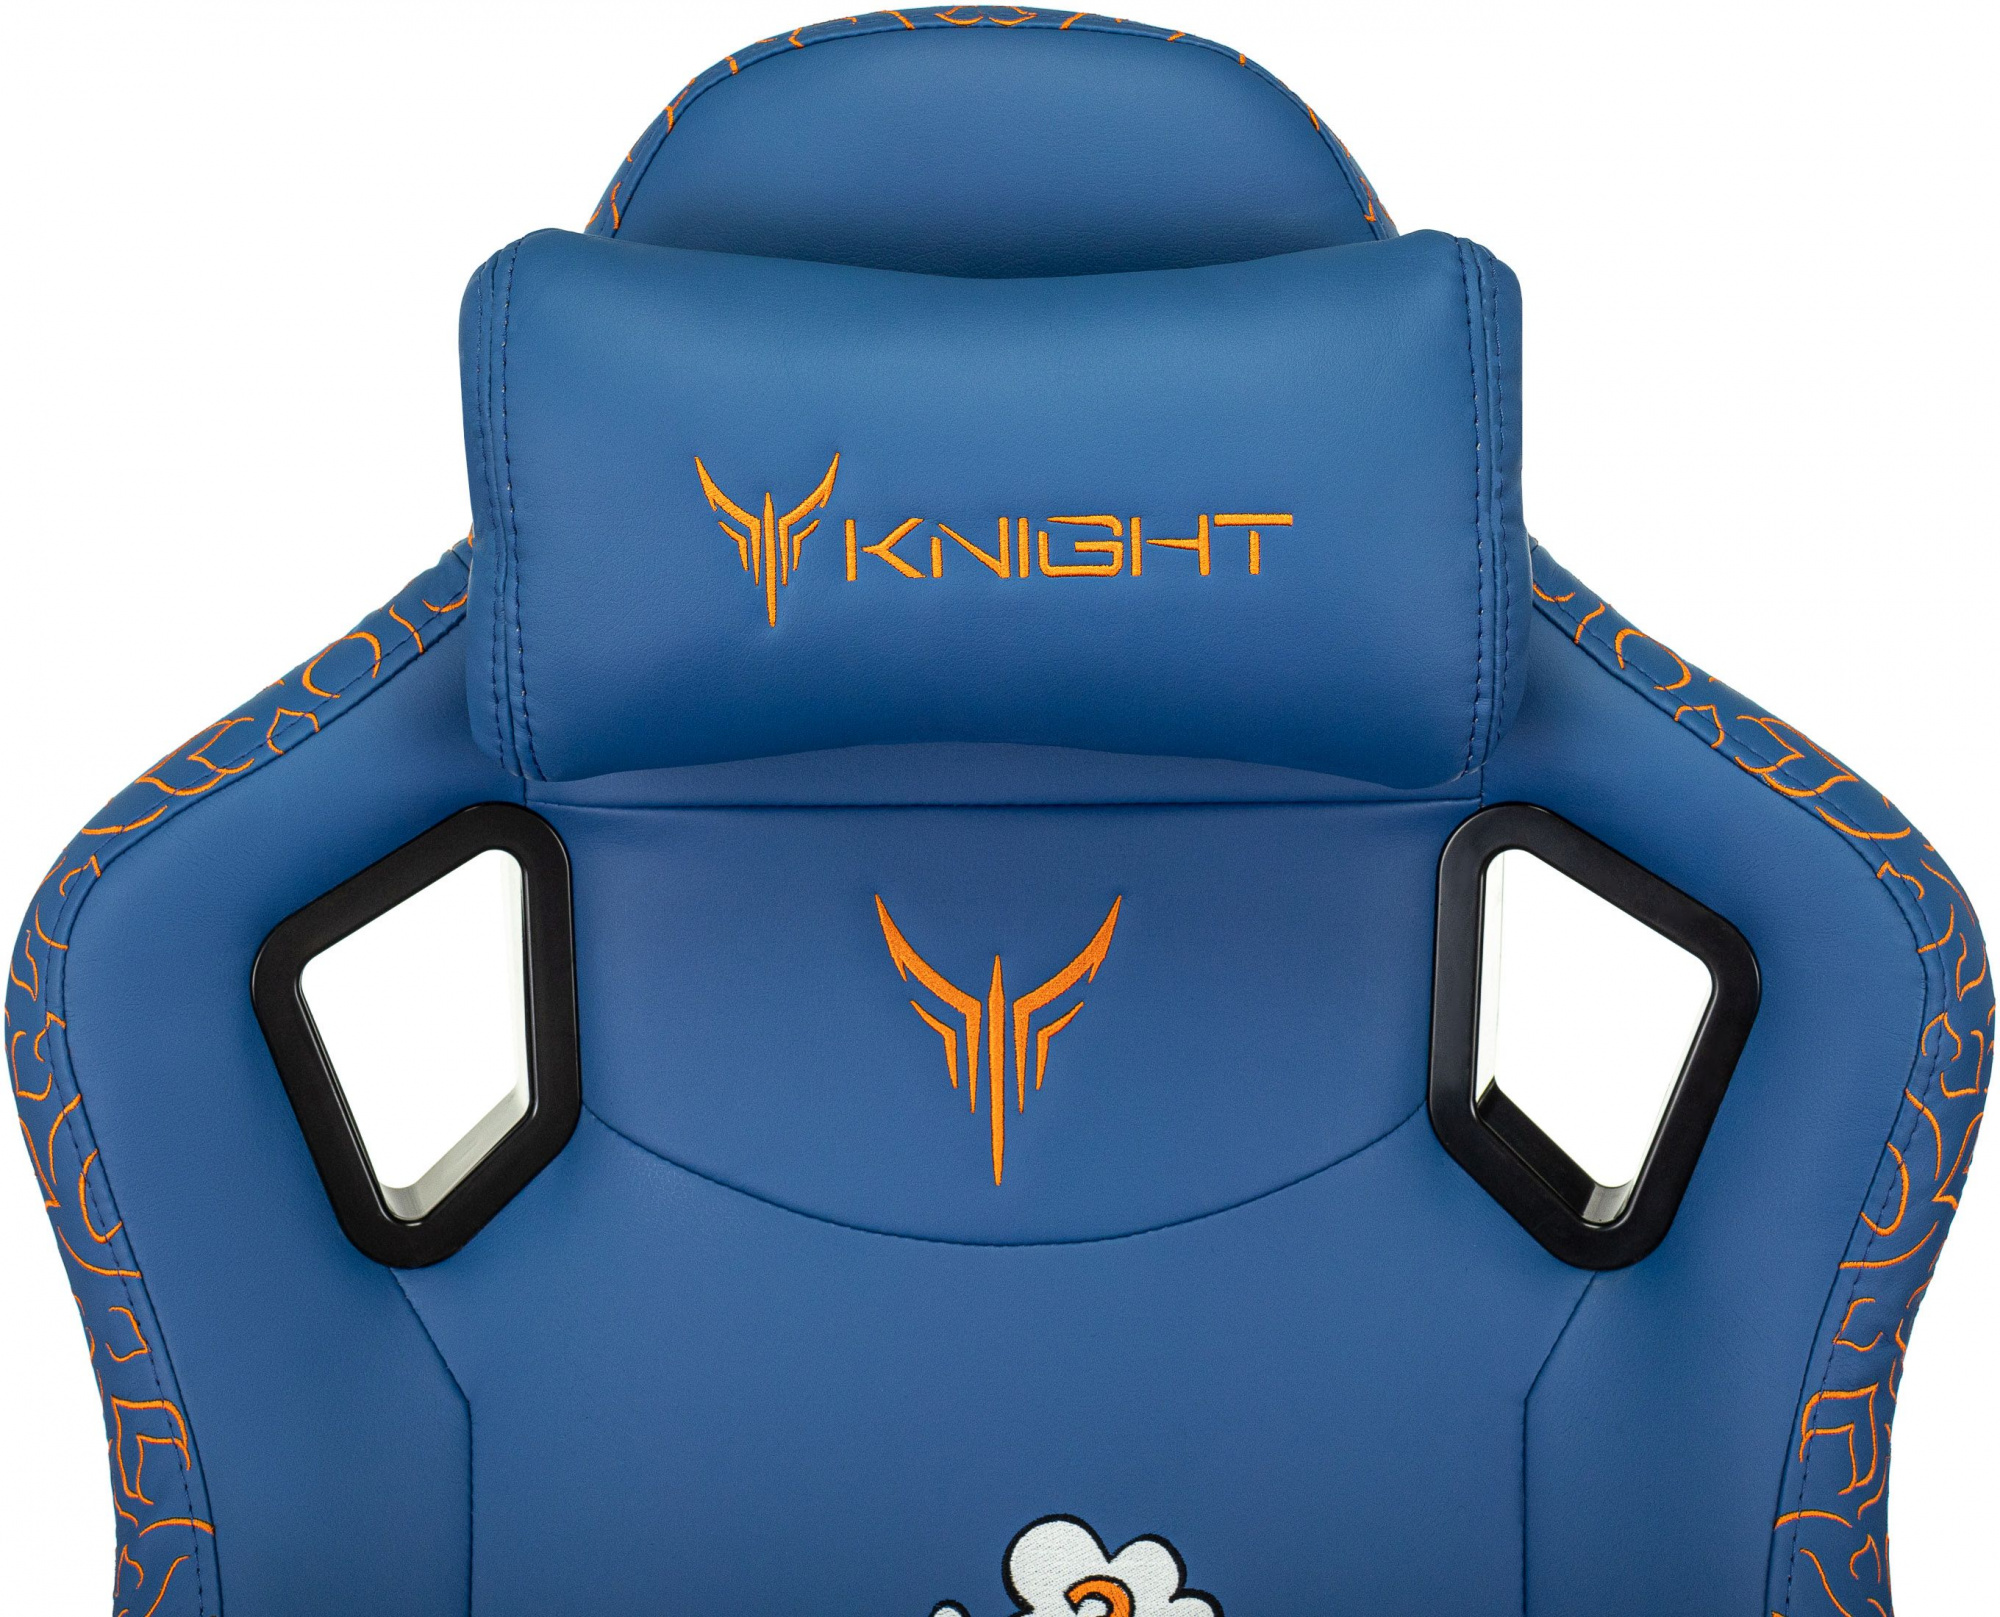 Кресло игровое Knight Craft Dragon синий эко.кожа крестов. металл